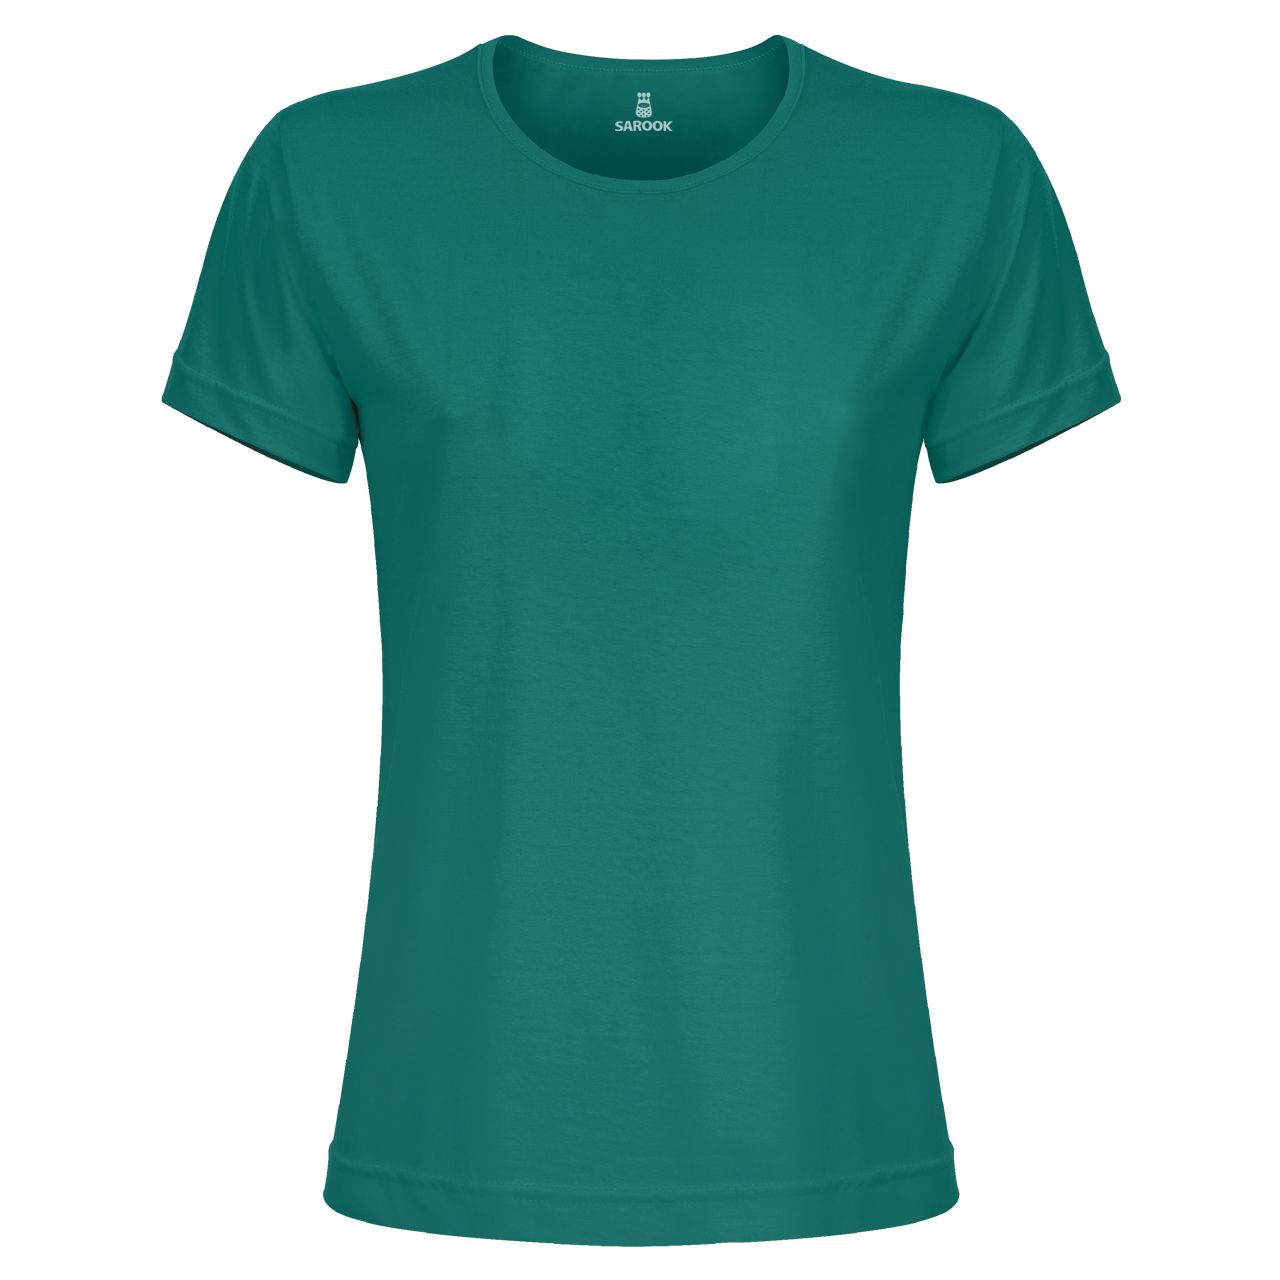 تی شرت آستین کوتاه زنانه ساروک مدل TSHPYR کد 06 رنگ سبز -  - 1